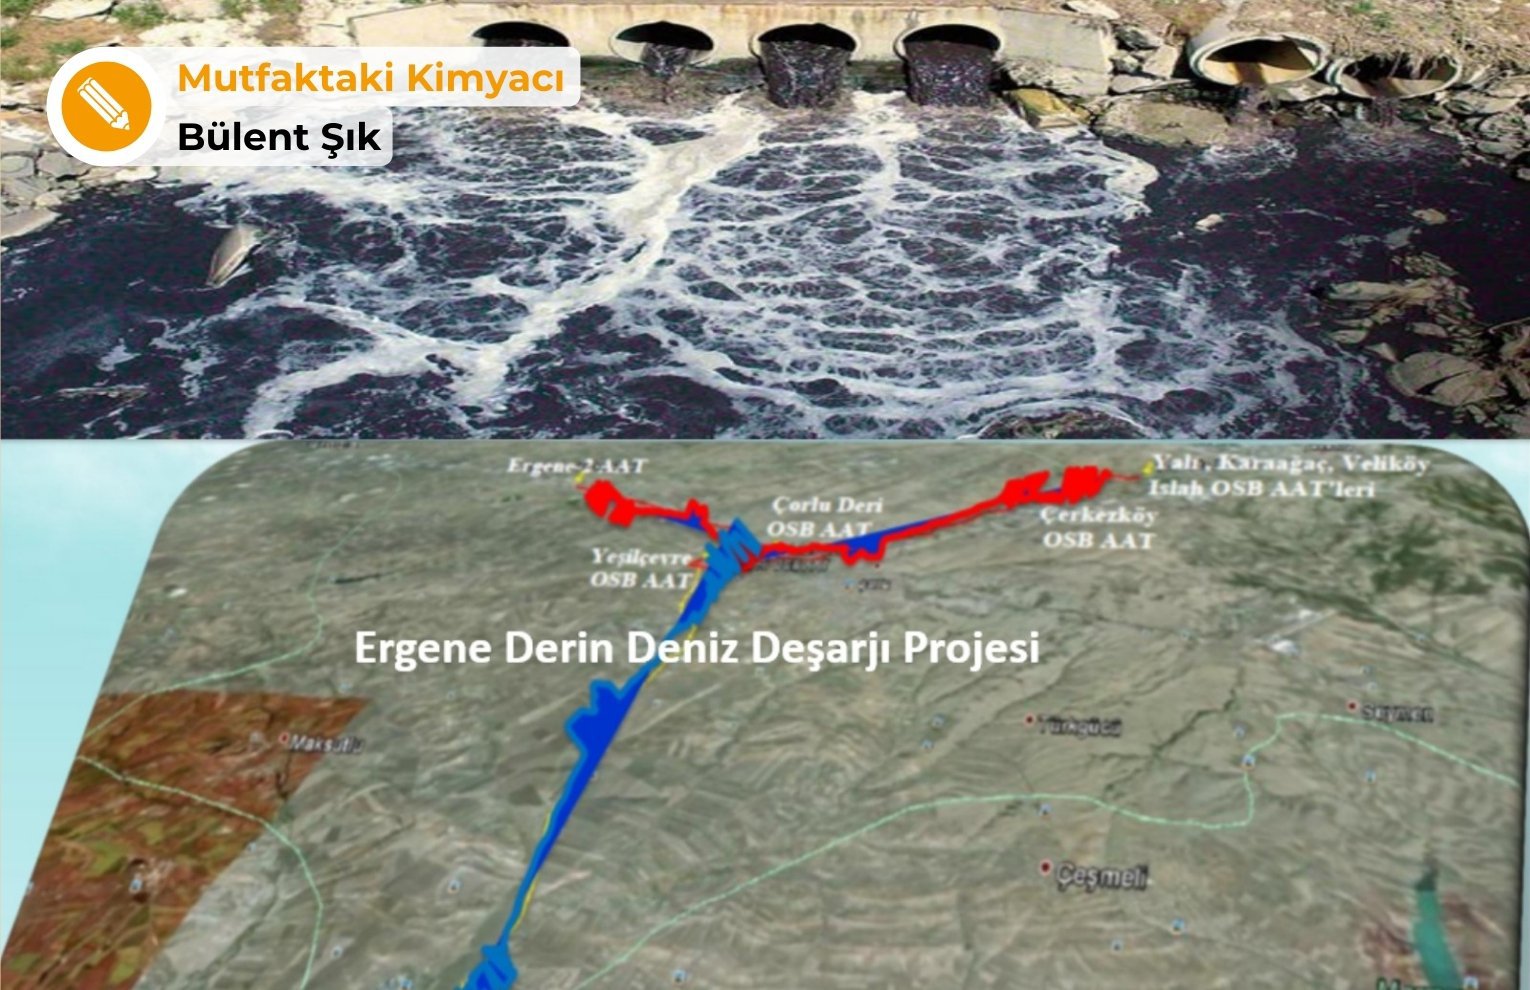 Ergene Derin Deniz Deşarjı ve Marmara Denizi’ndeki toksik kirlilik